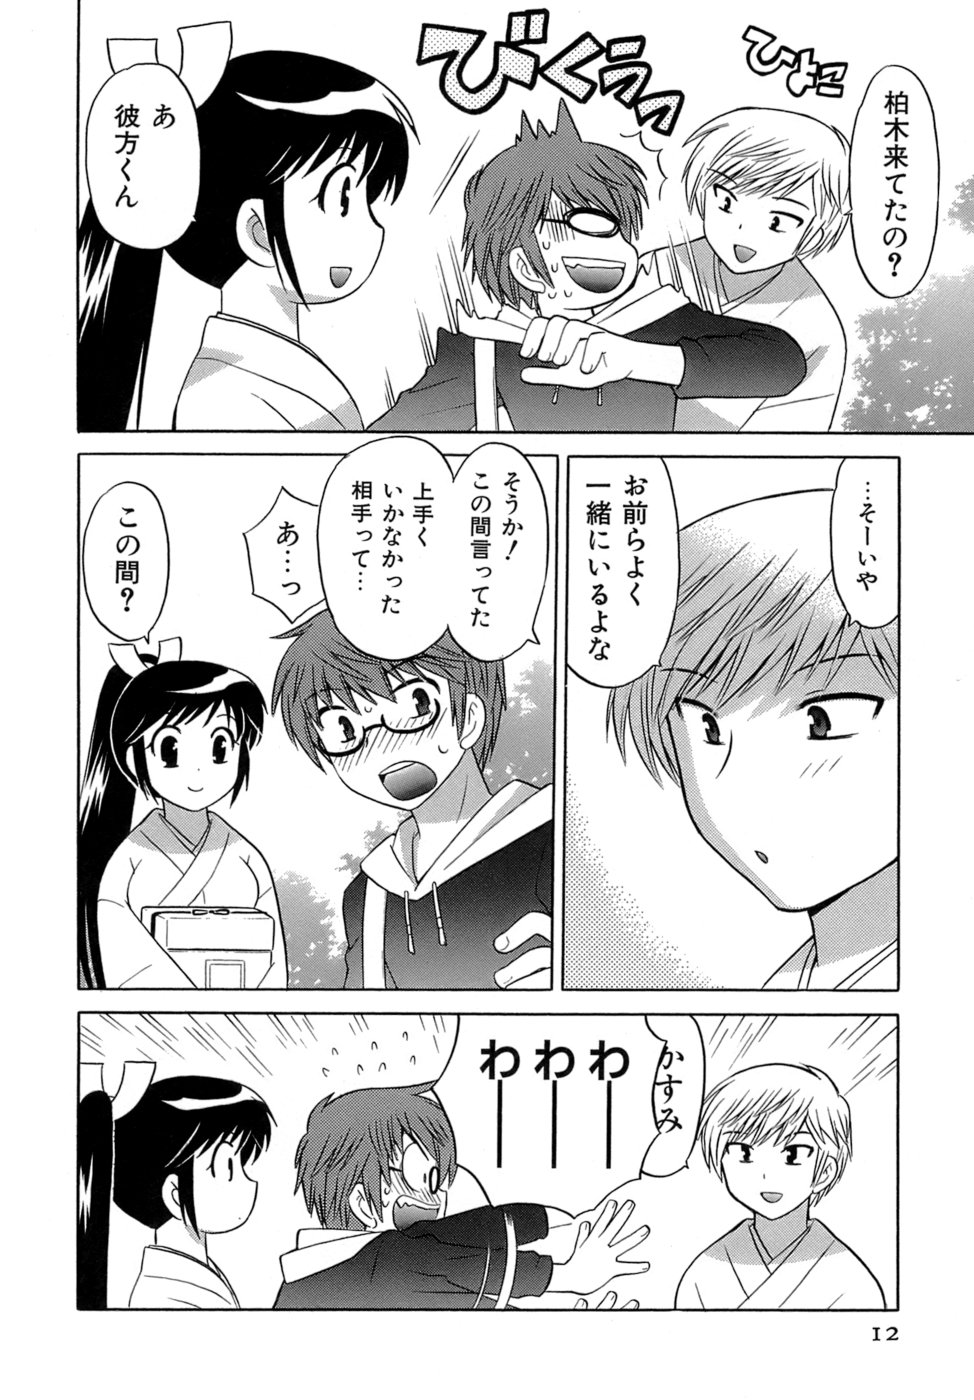 [Kotono Wakako] Miko Moe 2 page 13 full